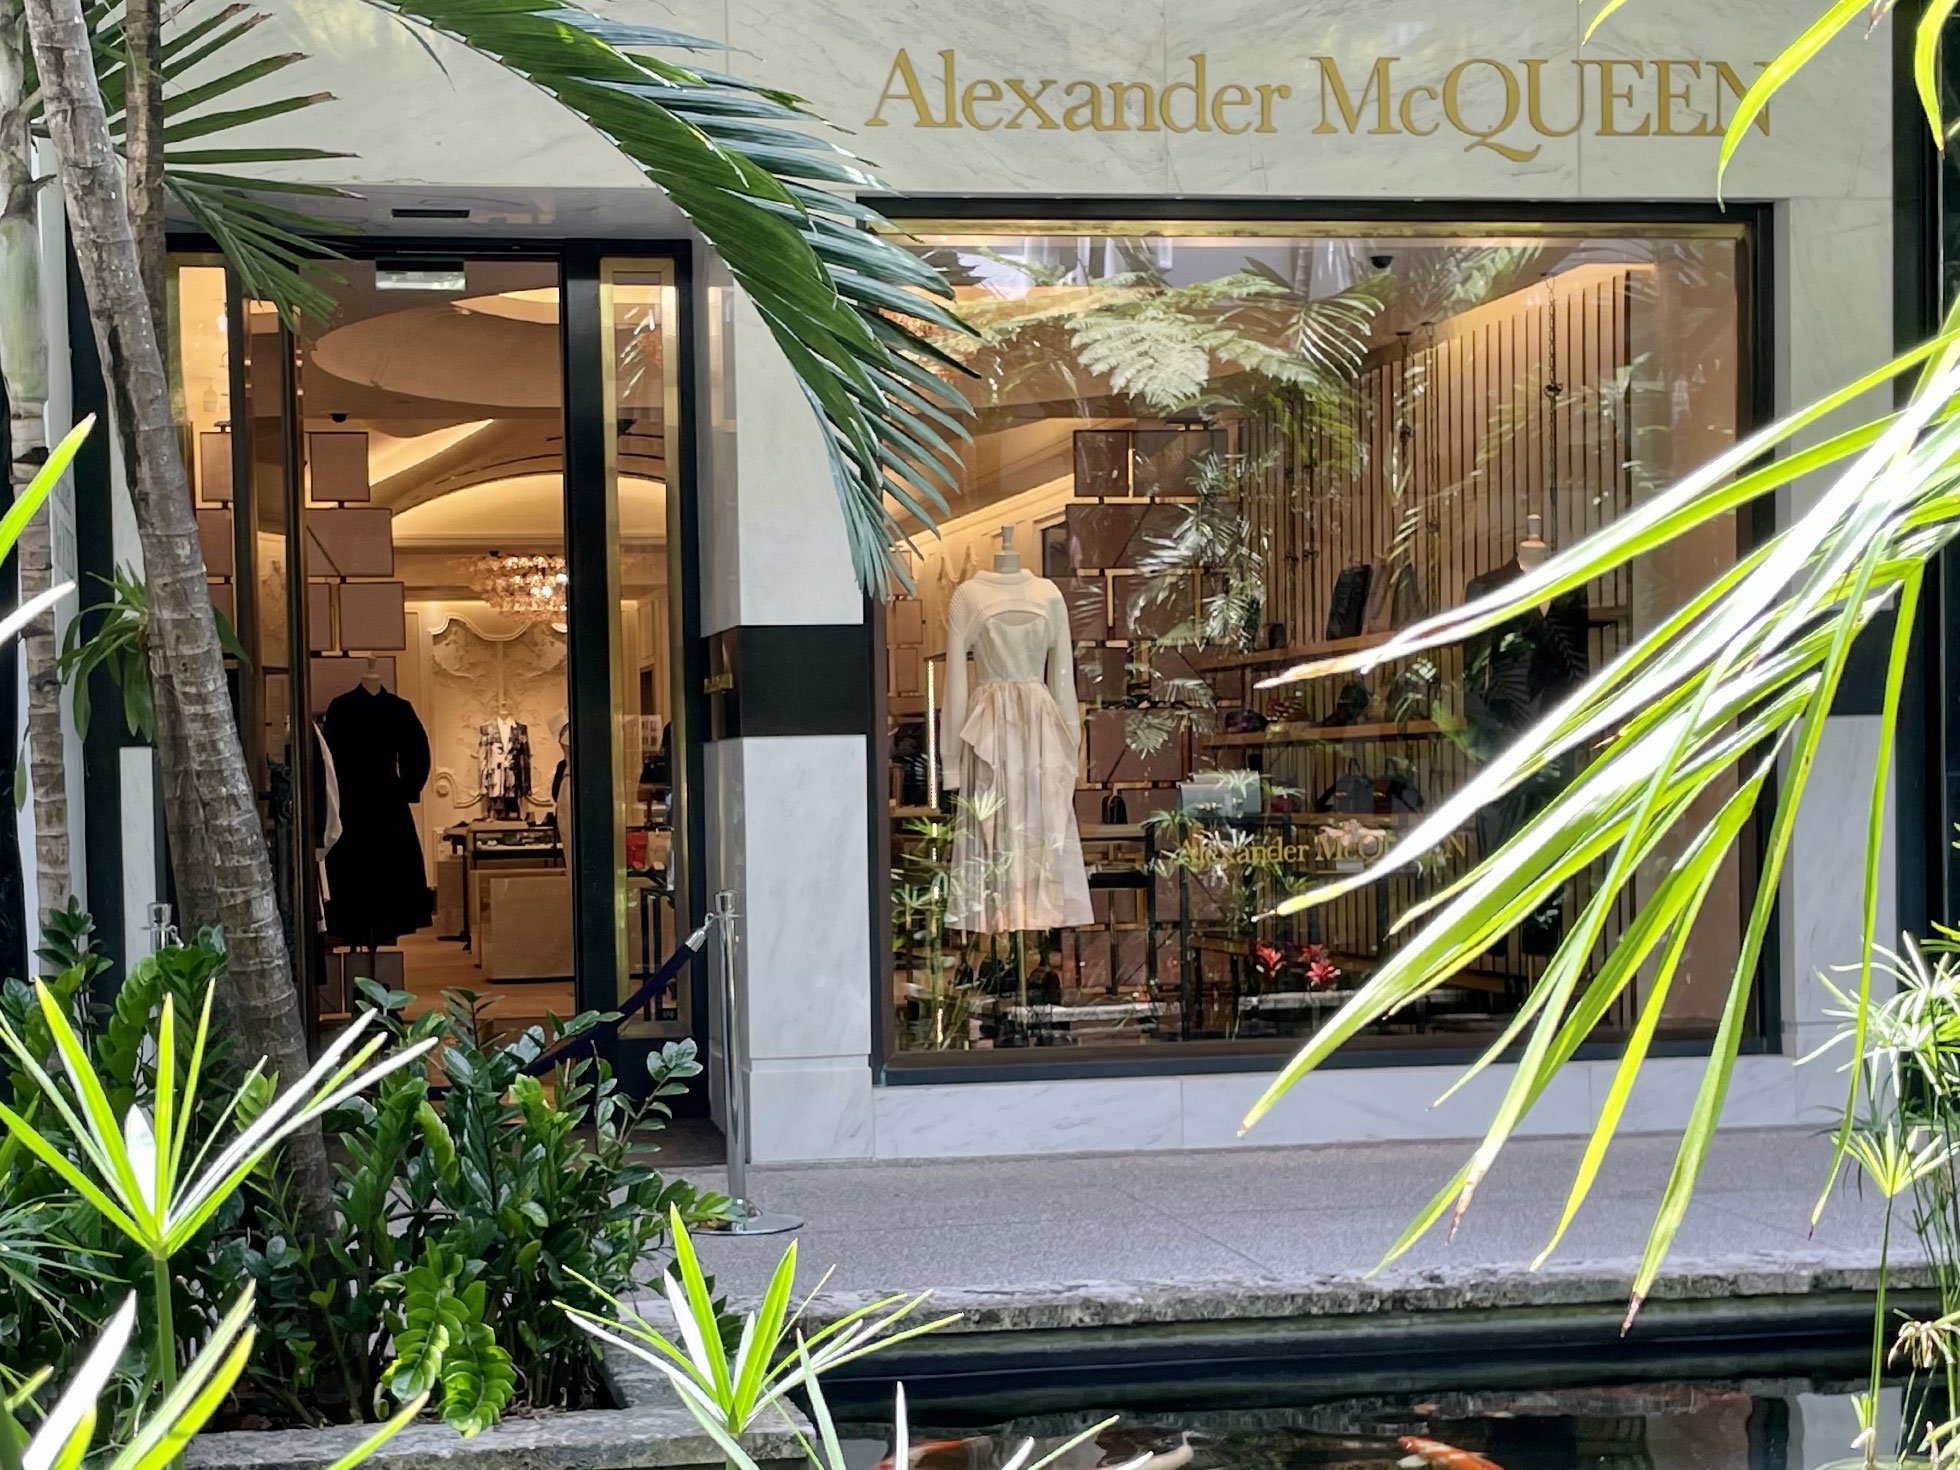 Alexander McQueen shop